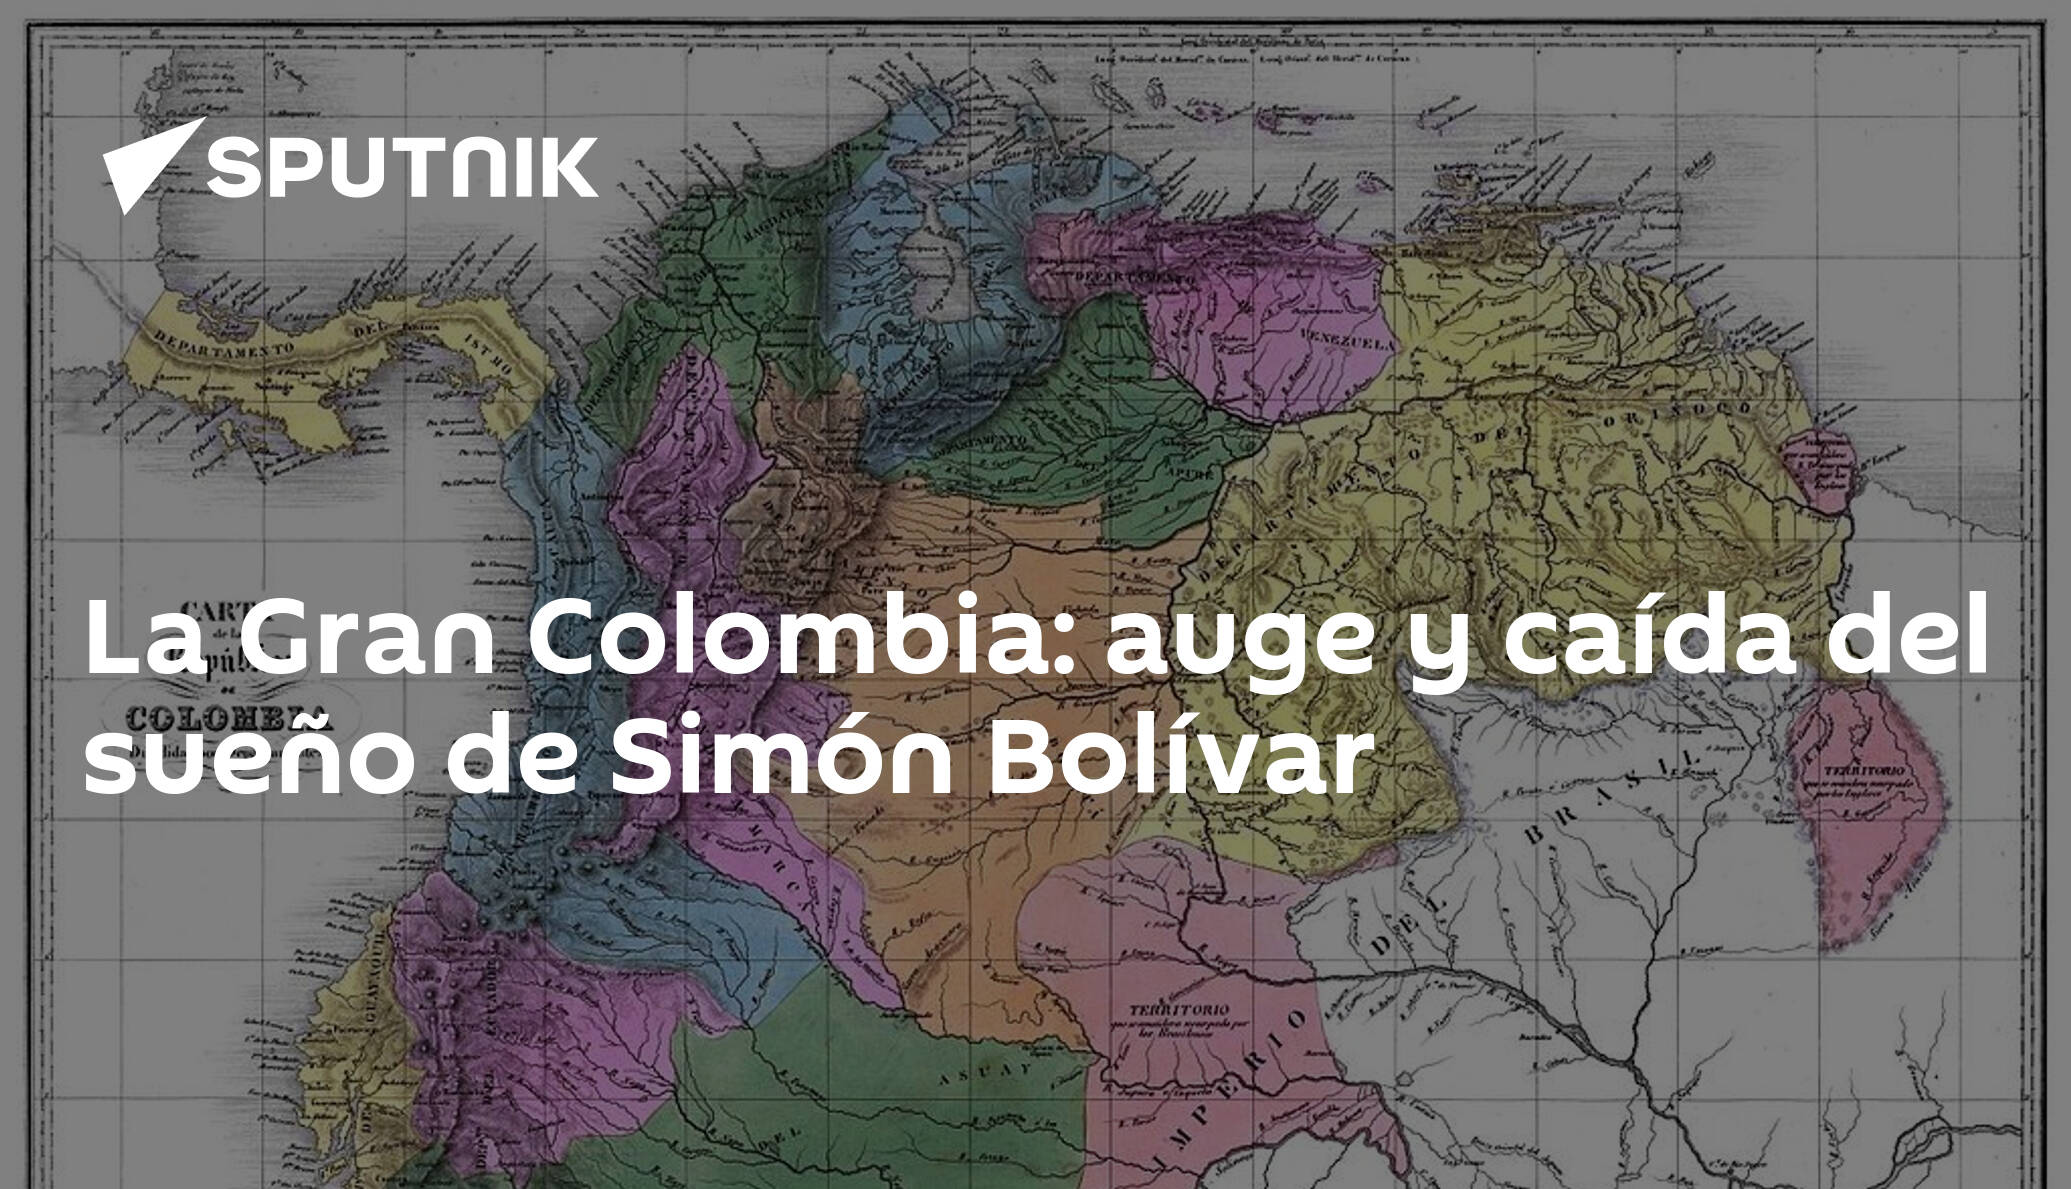 La Gran Colombia Auge Y Caída Del Sueño De Simón Bolívar 07082019 Sputnik Mundo 4929